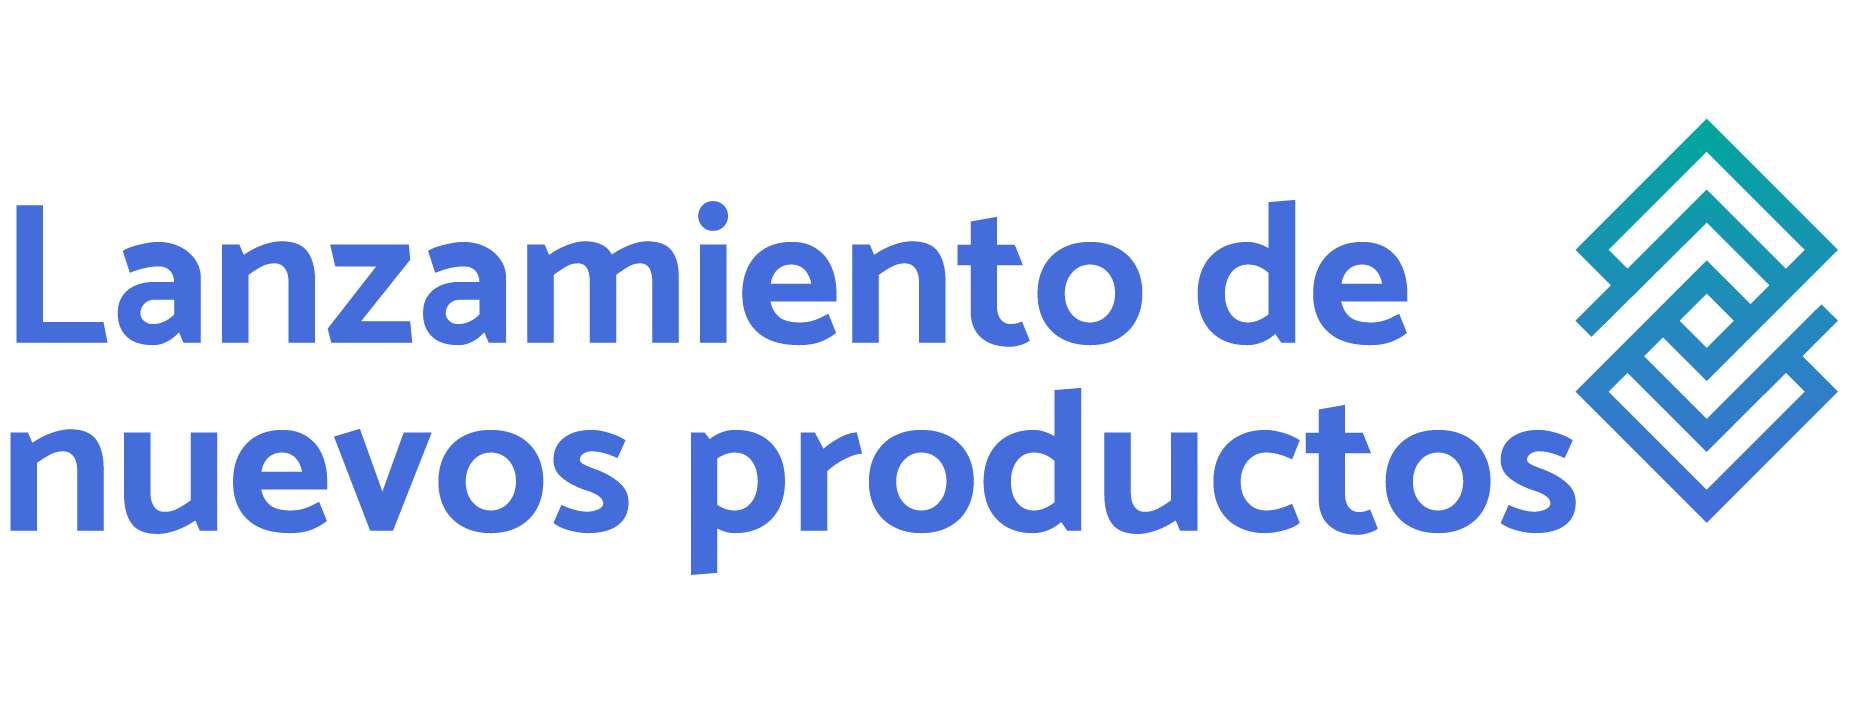 logo curso lanzamiento de productos